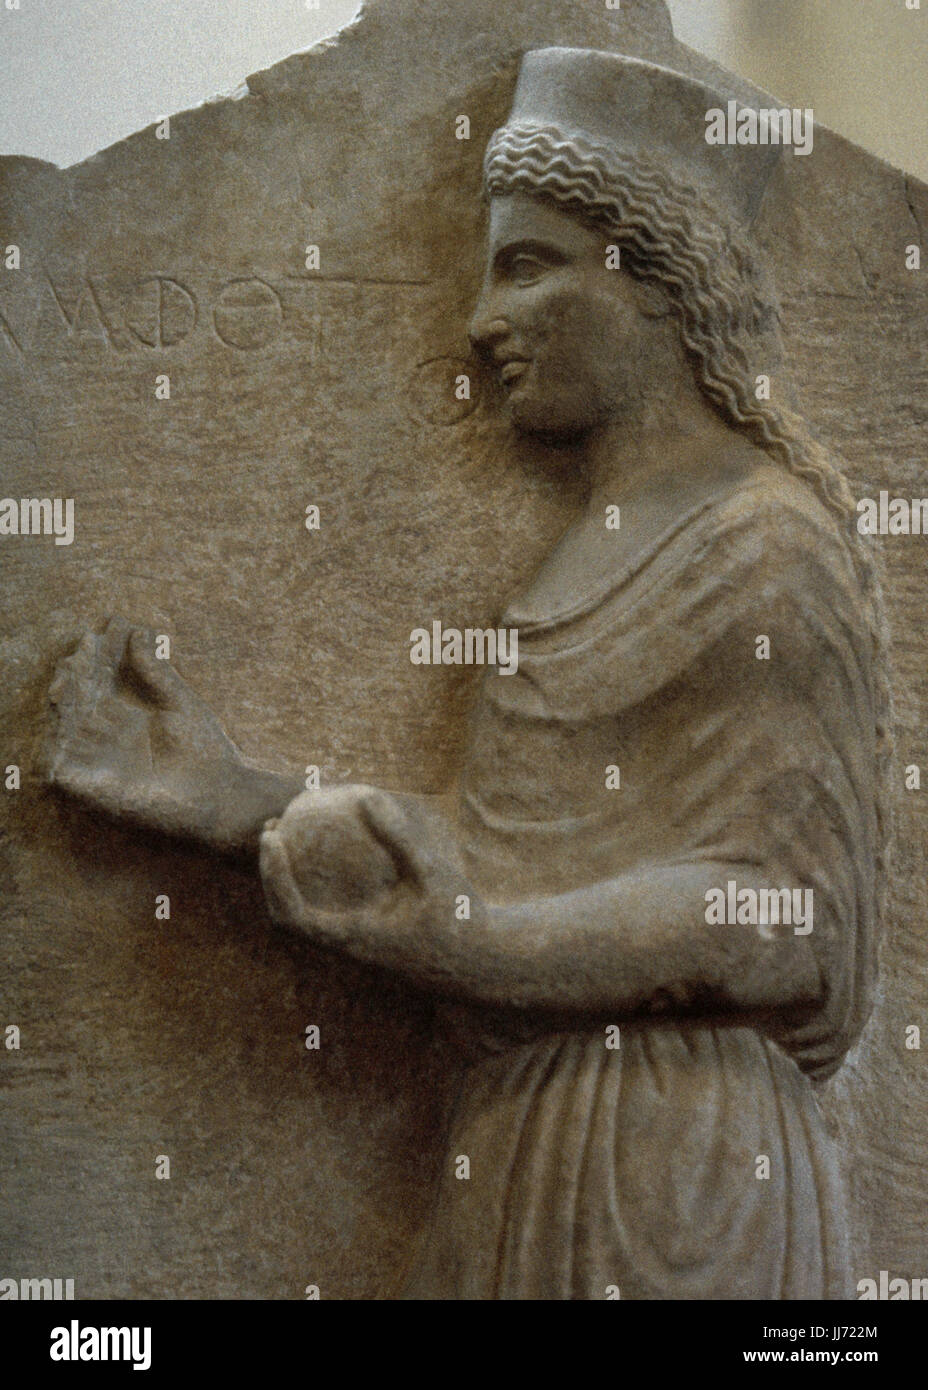 Grabstele des Amphotto aus Theben. Ca. 440 BC. Kalkstein. Die tote Frau Amphotto tragen einen Peplos. Nationales Archäologisches Museum. Athen. Griechenland. Stockfoto